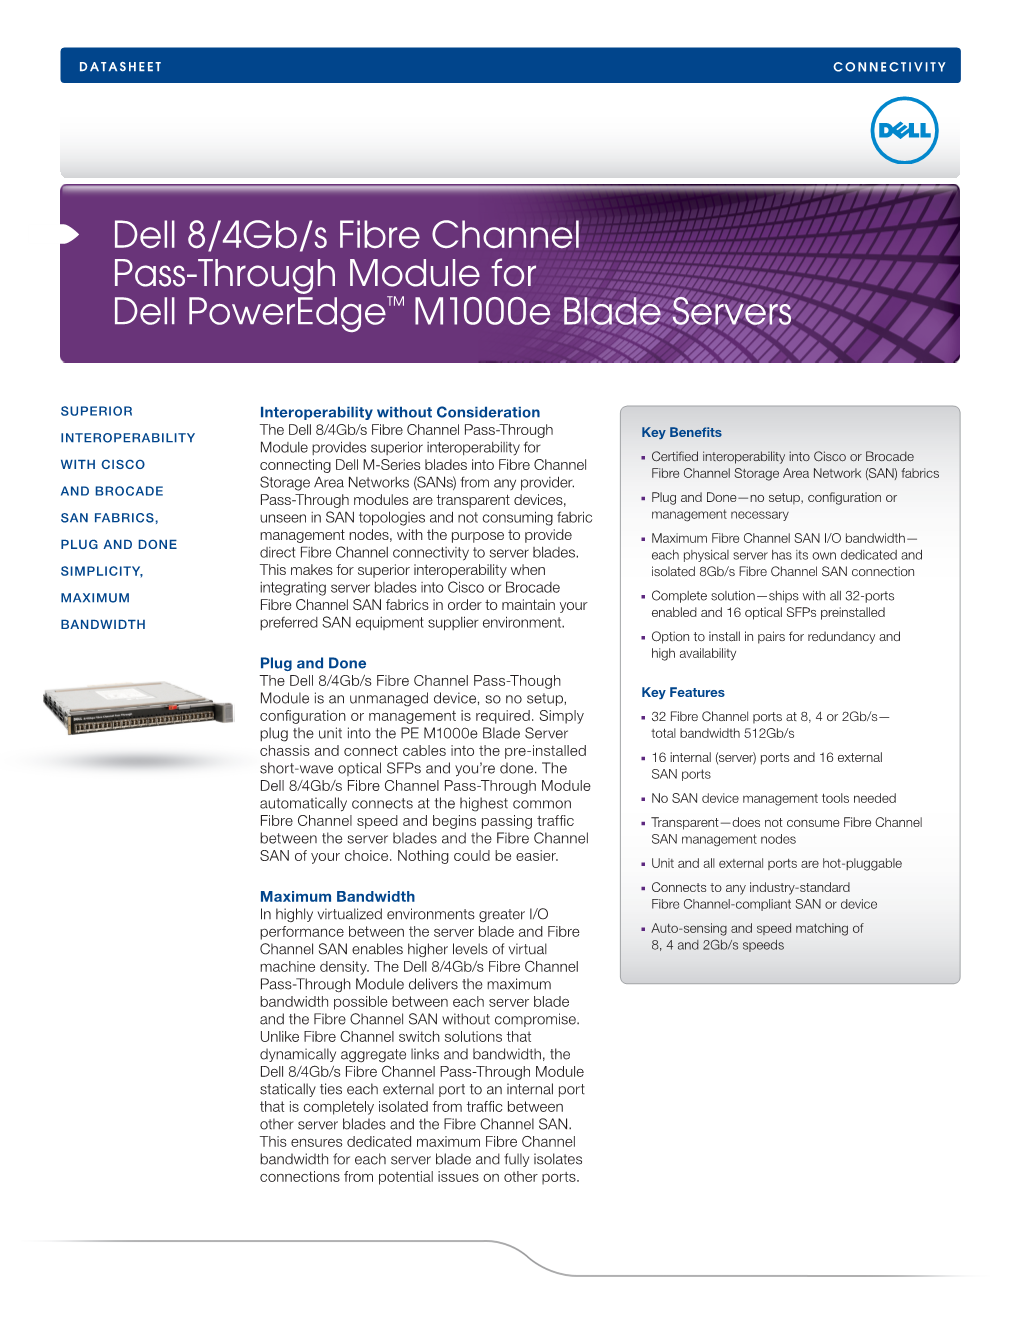 Dell 8/4Gb/S Fibre Channel Pass-Through Module for Dell Poweredge™ M1000e Blade Servers